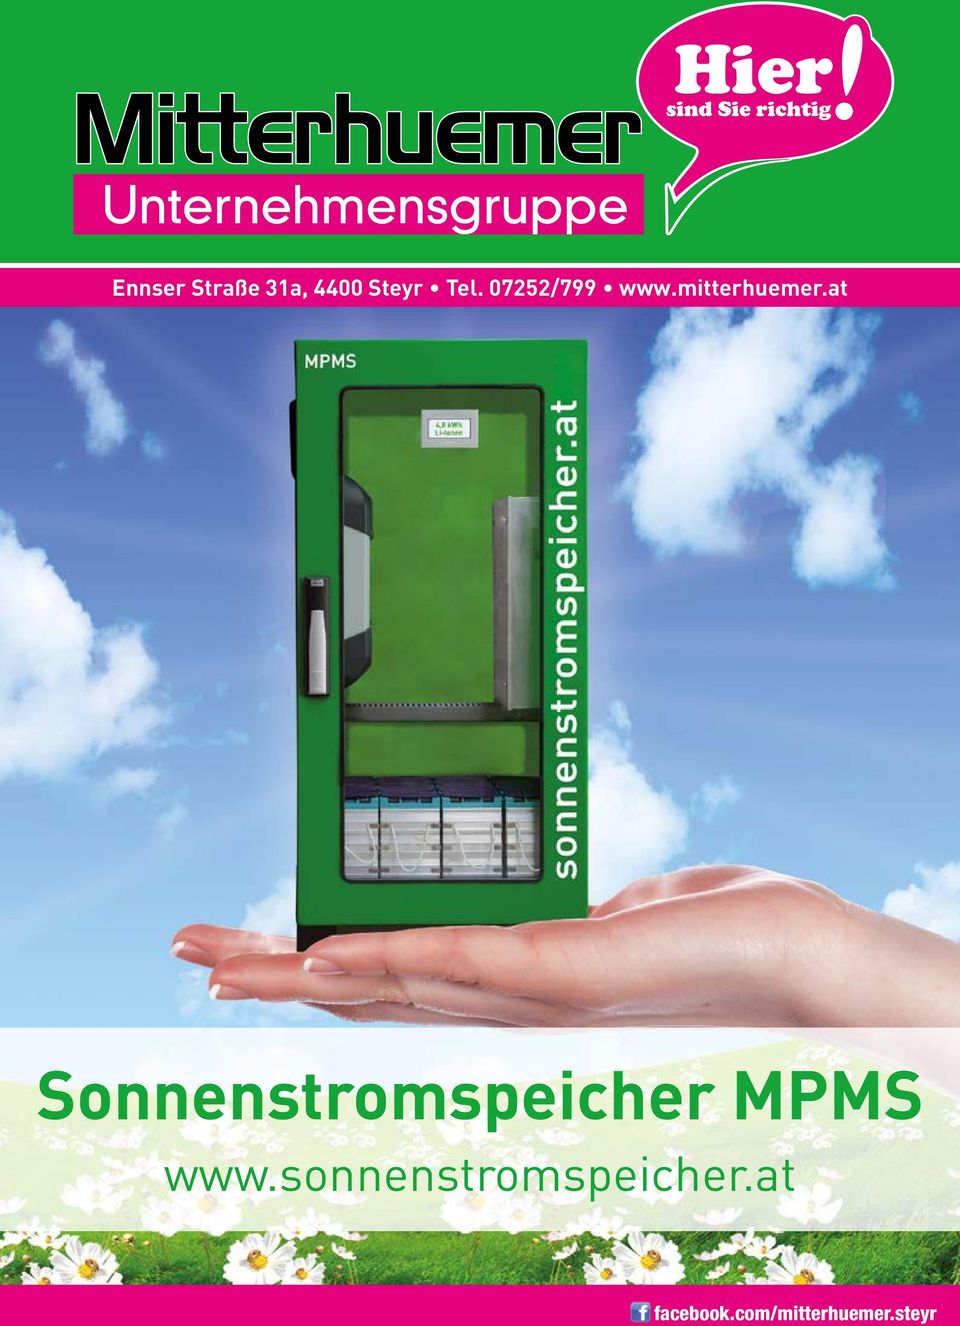 at Sonnenstromspeicher MPMS www.